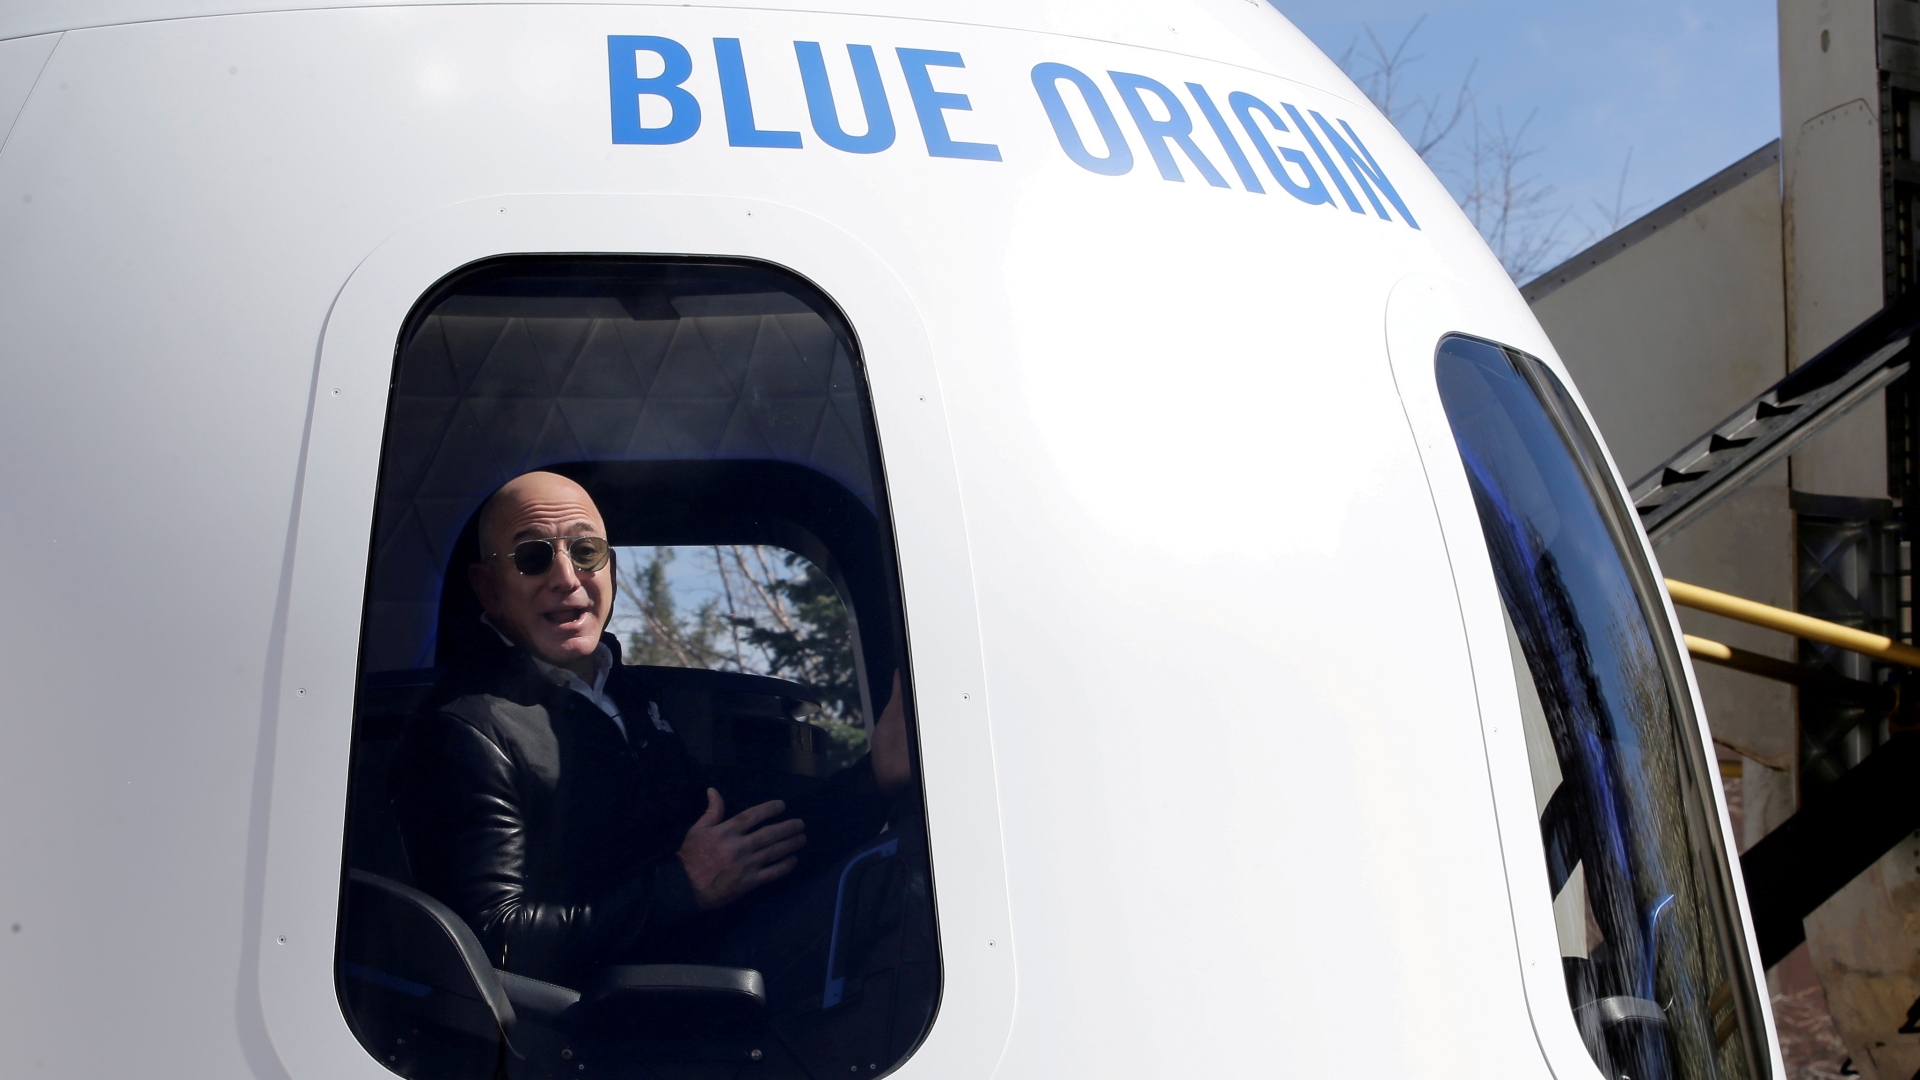 Amazon-Gründer Jeff Bezos sitzt begeistert in der Weltraumkapsel von Blue Origin. | REUTERS